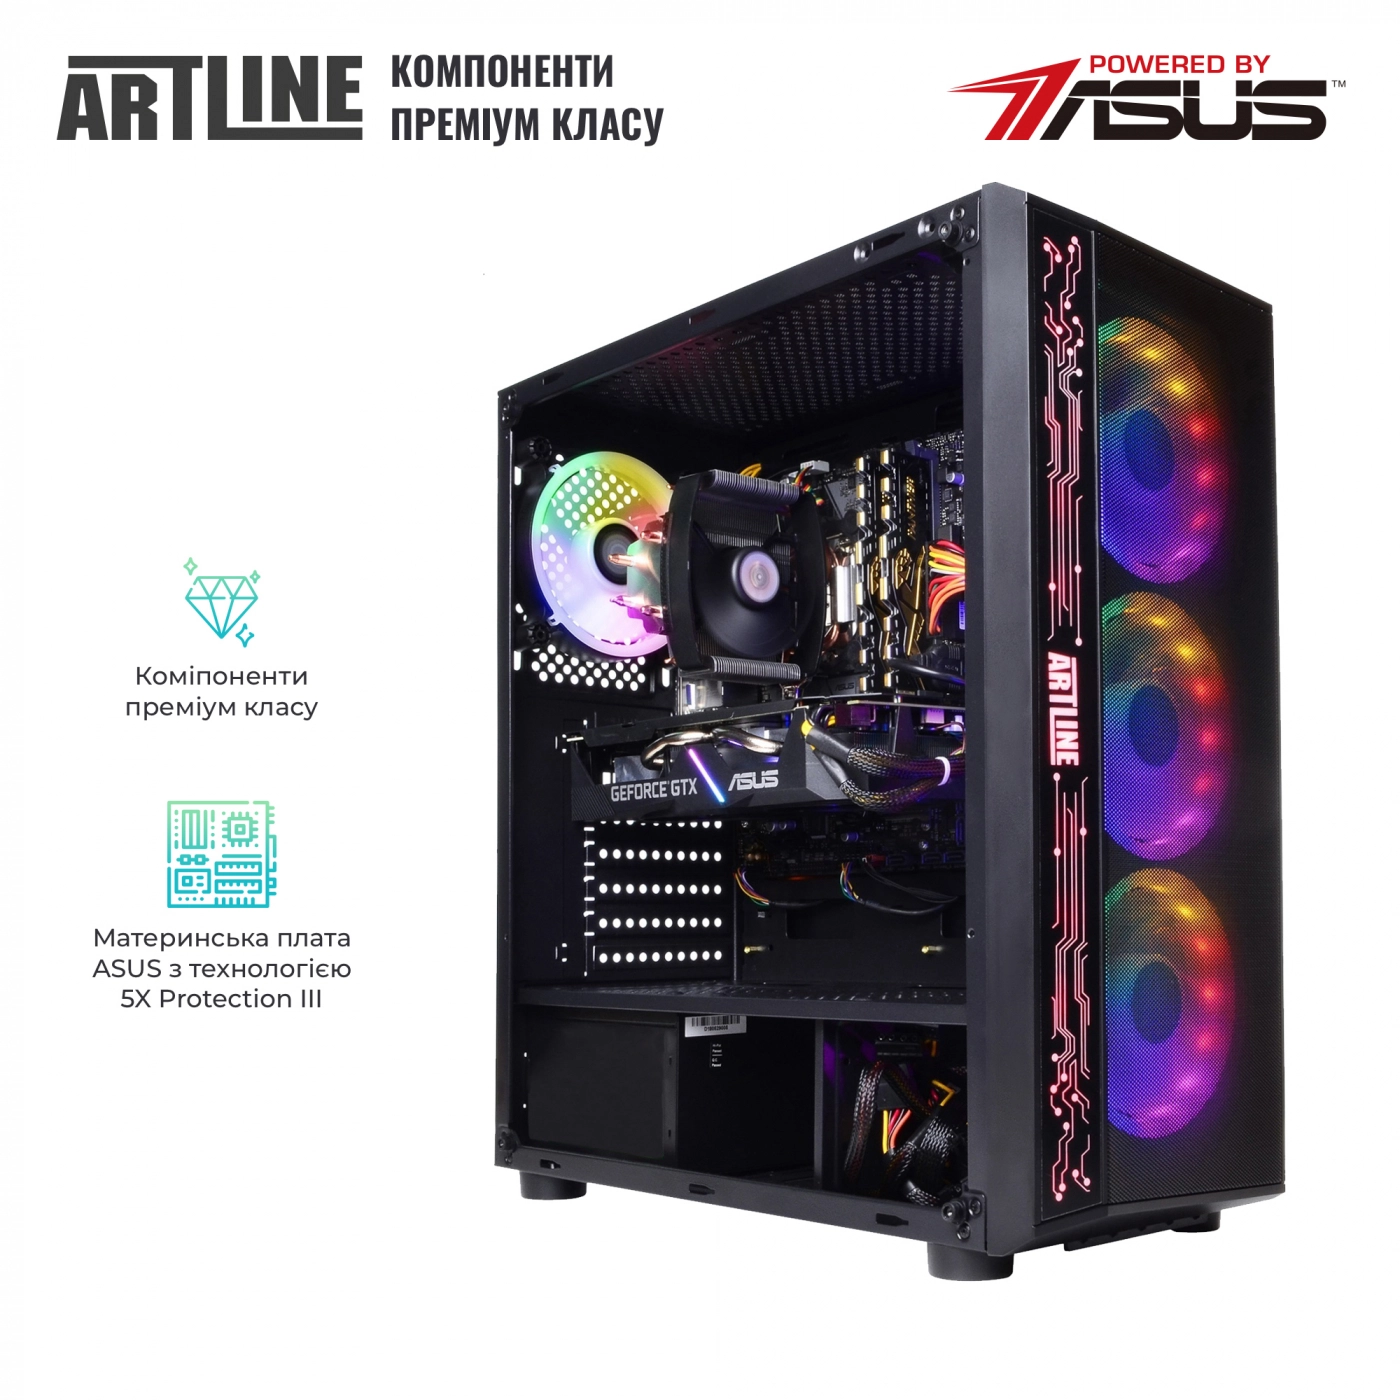 Купить Компьютер ARTLINE Gaming X48v16 - фото 2